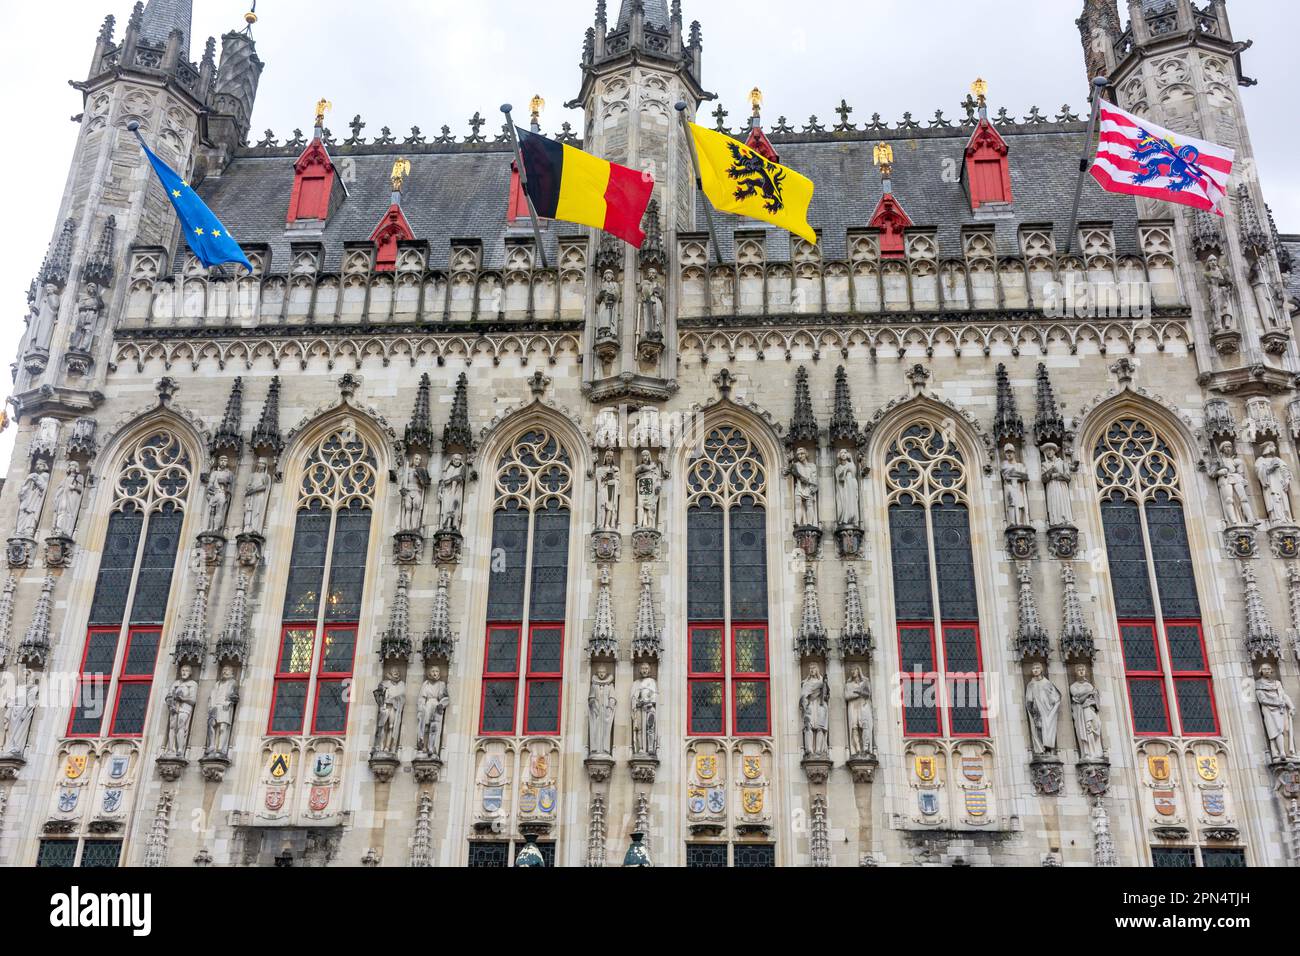 14th Century Stadhuis Brugge (Hôtel de ville de Bruges), Burg, Brugge (Bruges), province de Flandre Occidentale, région flamande, Belgique Banque D'Images